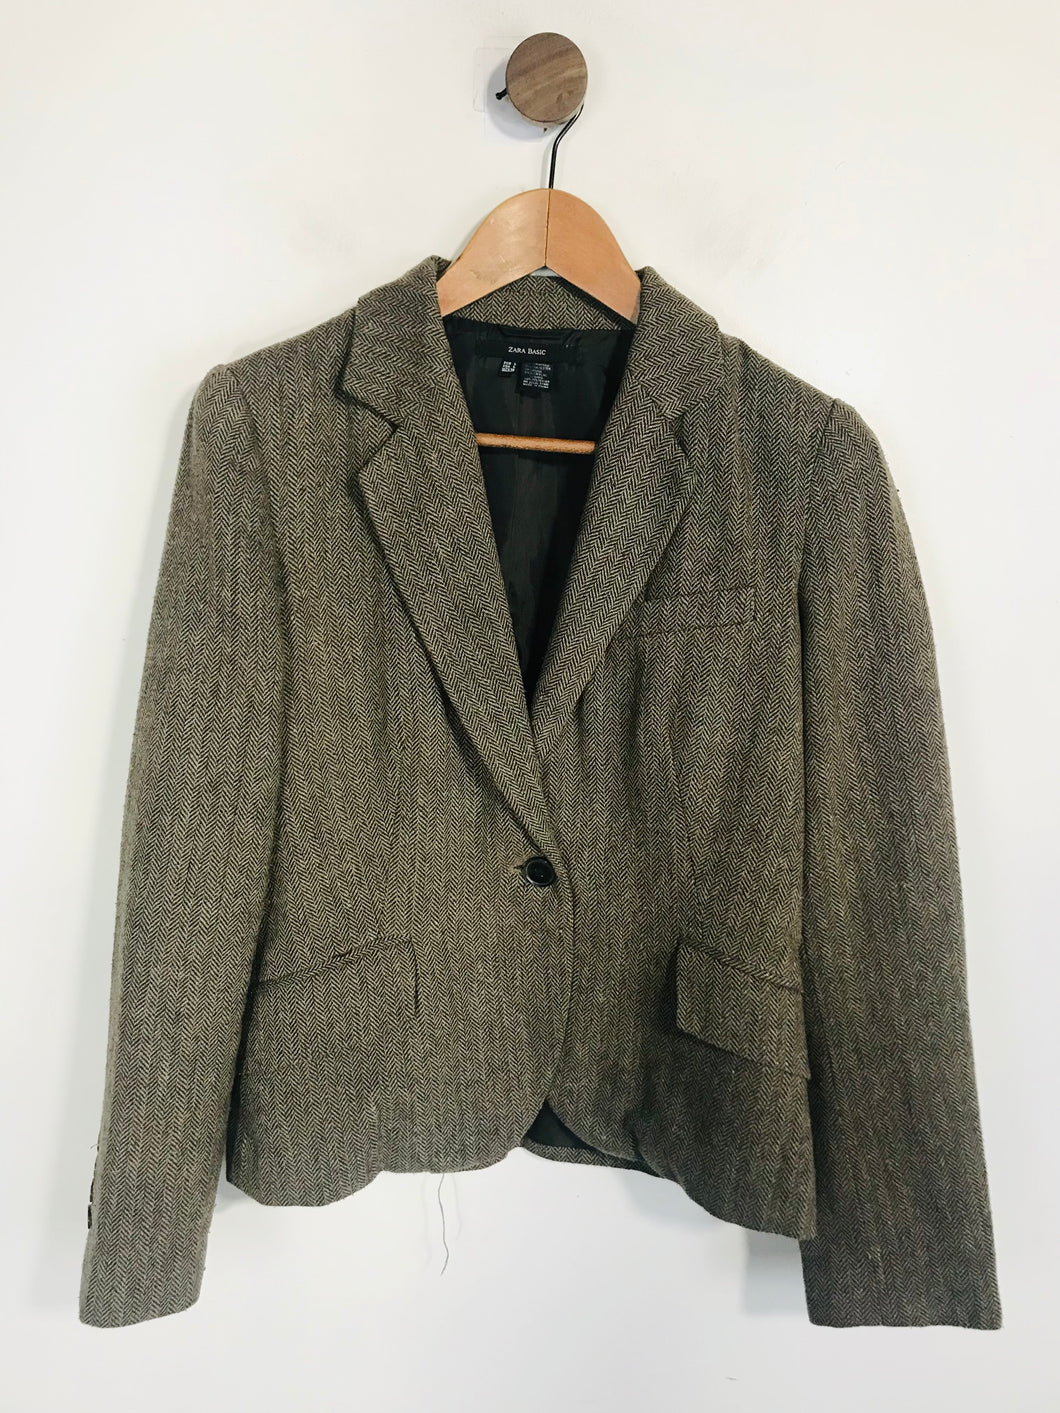 Zara Women's Tweed Smart Blazer Jacket | L UK14 | Brown